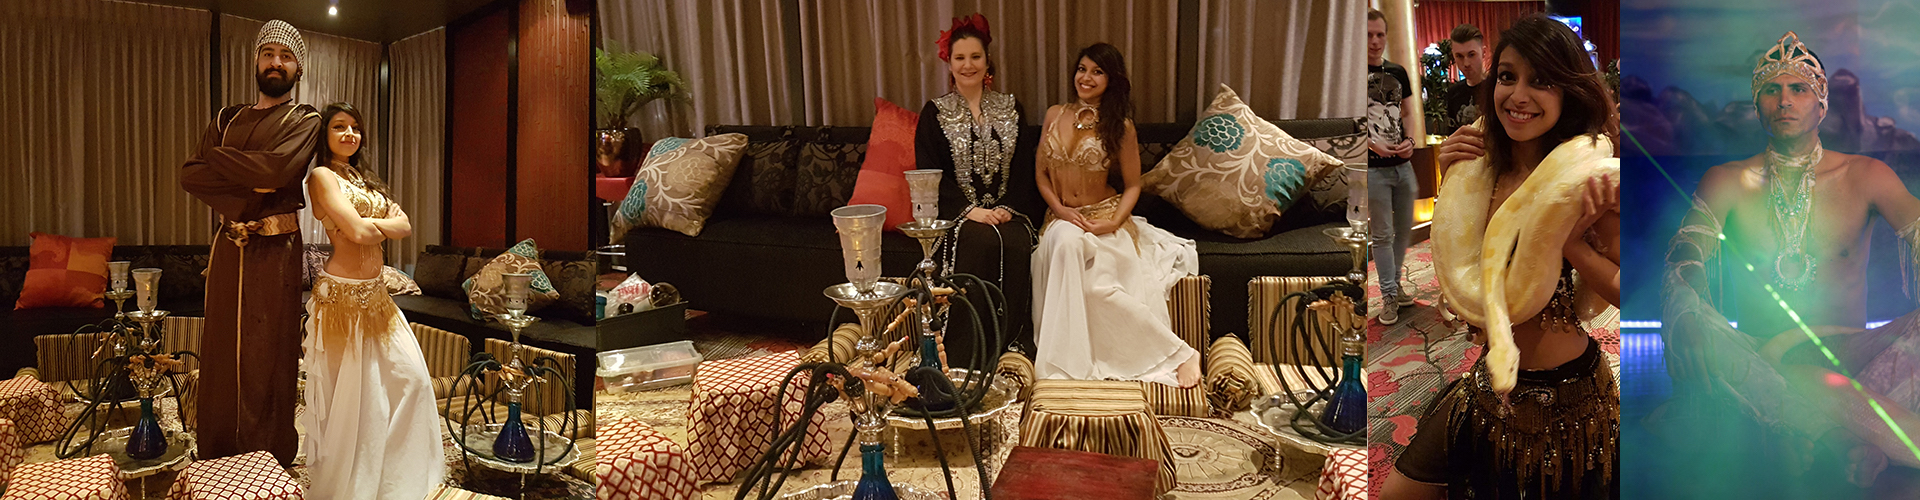 Arabisch entertainment Marrakesh themafeest